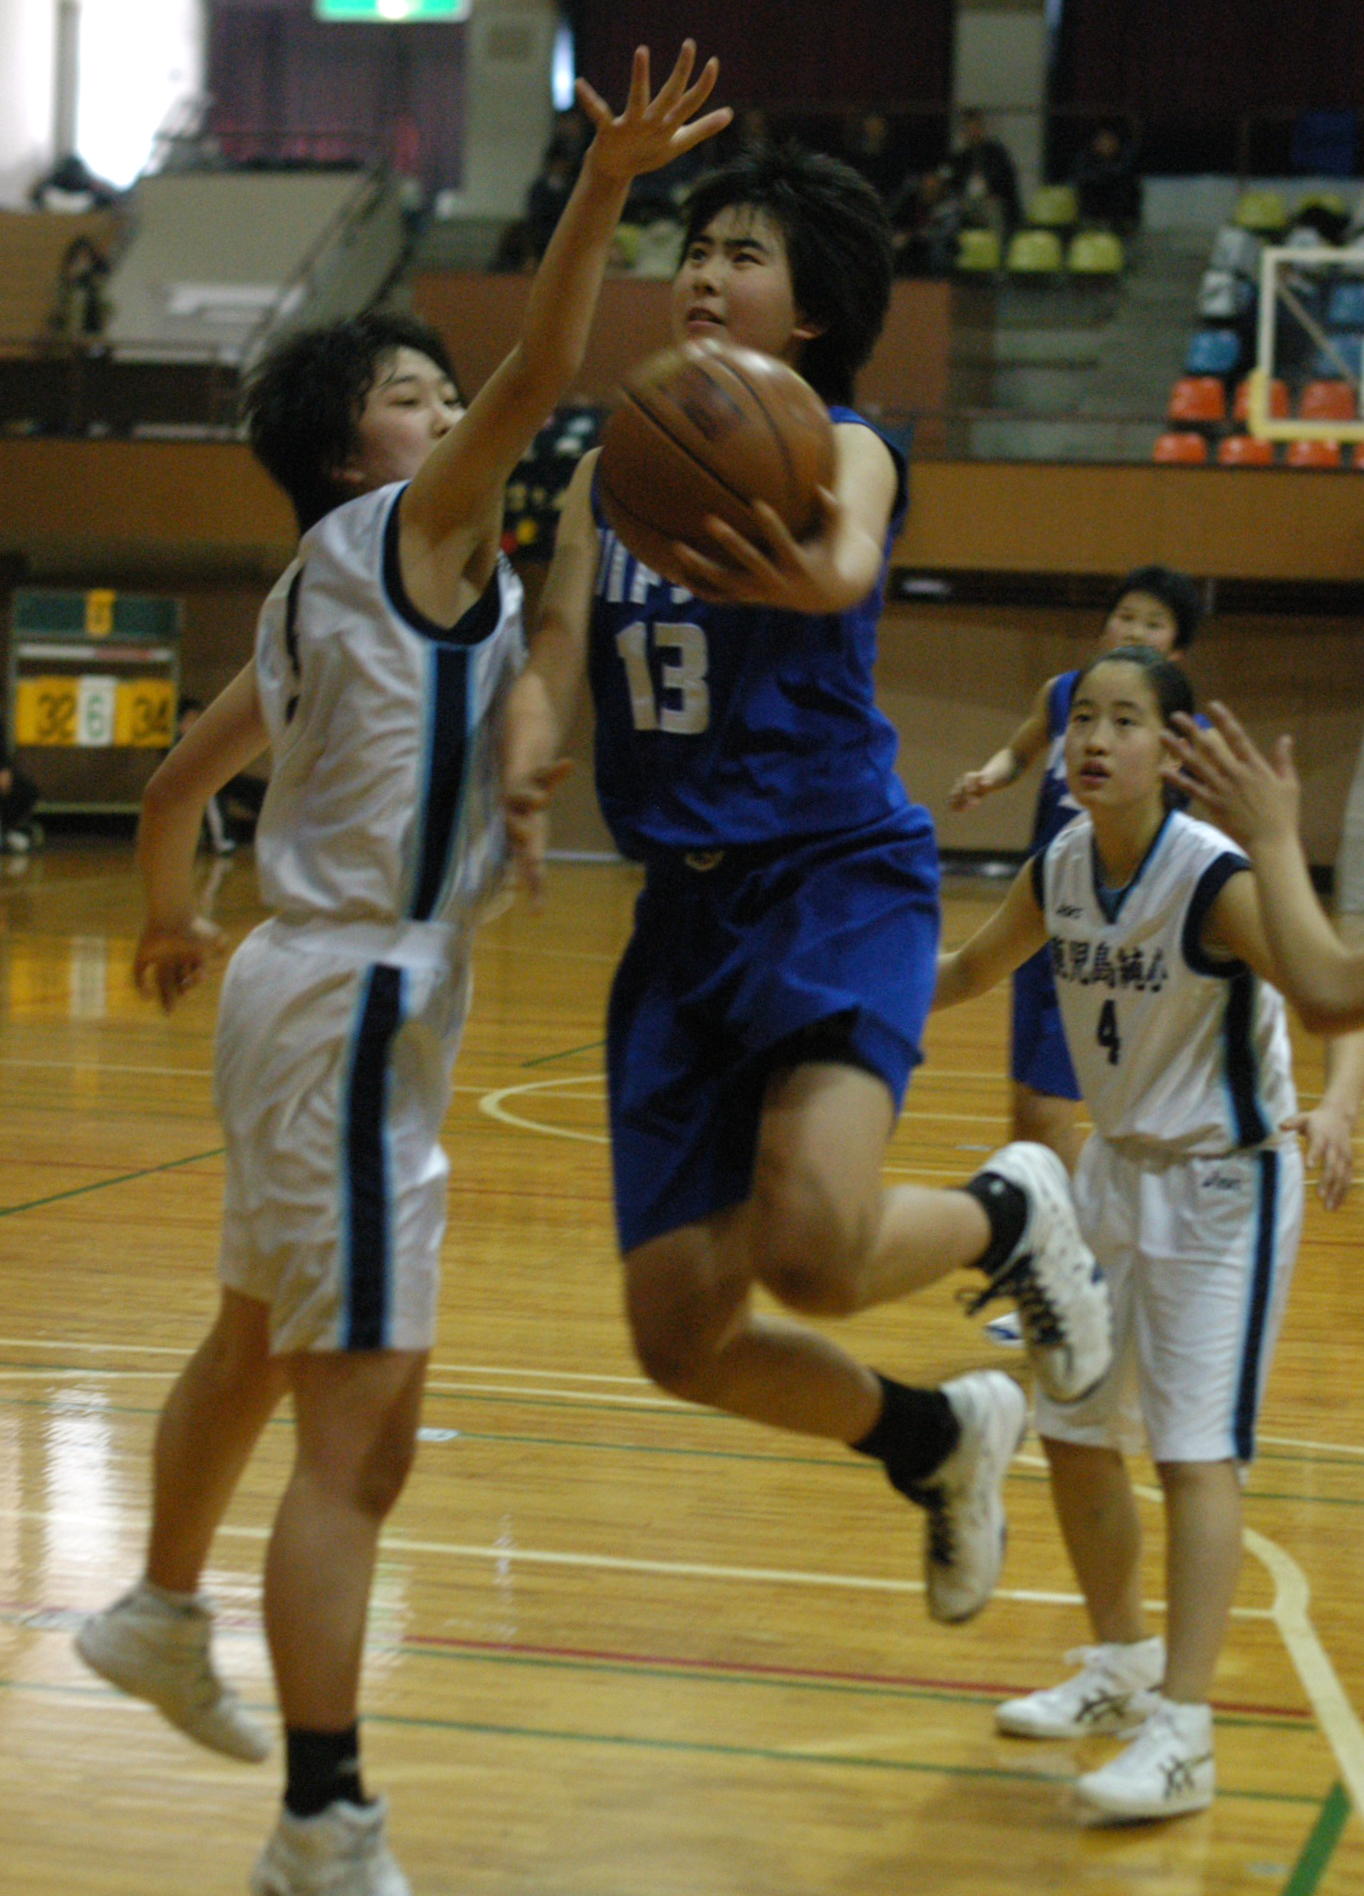 鹿児島県中学校新人バスケットボール大会 | スポーツかごんまニュース